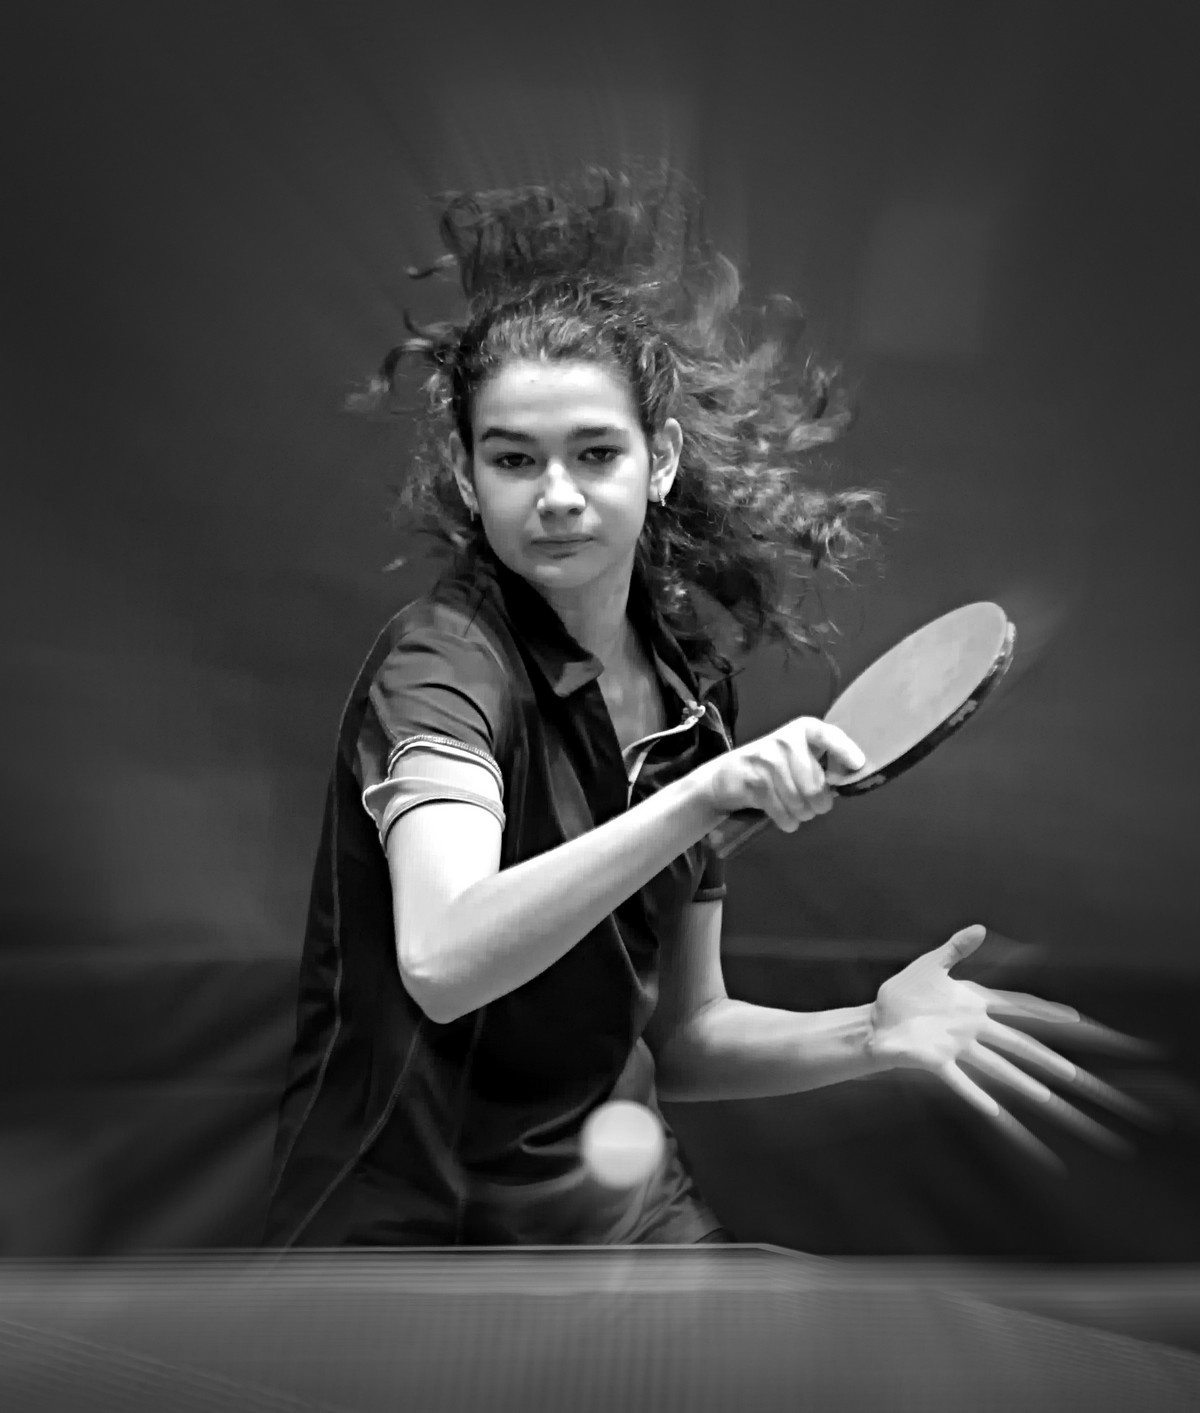 Дарья Зюзина. настольный теннис пинг-понг спорт table tennis ping-pong sport girl